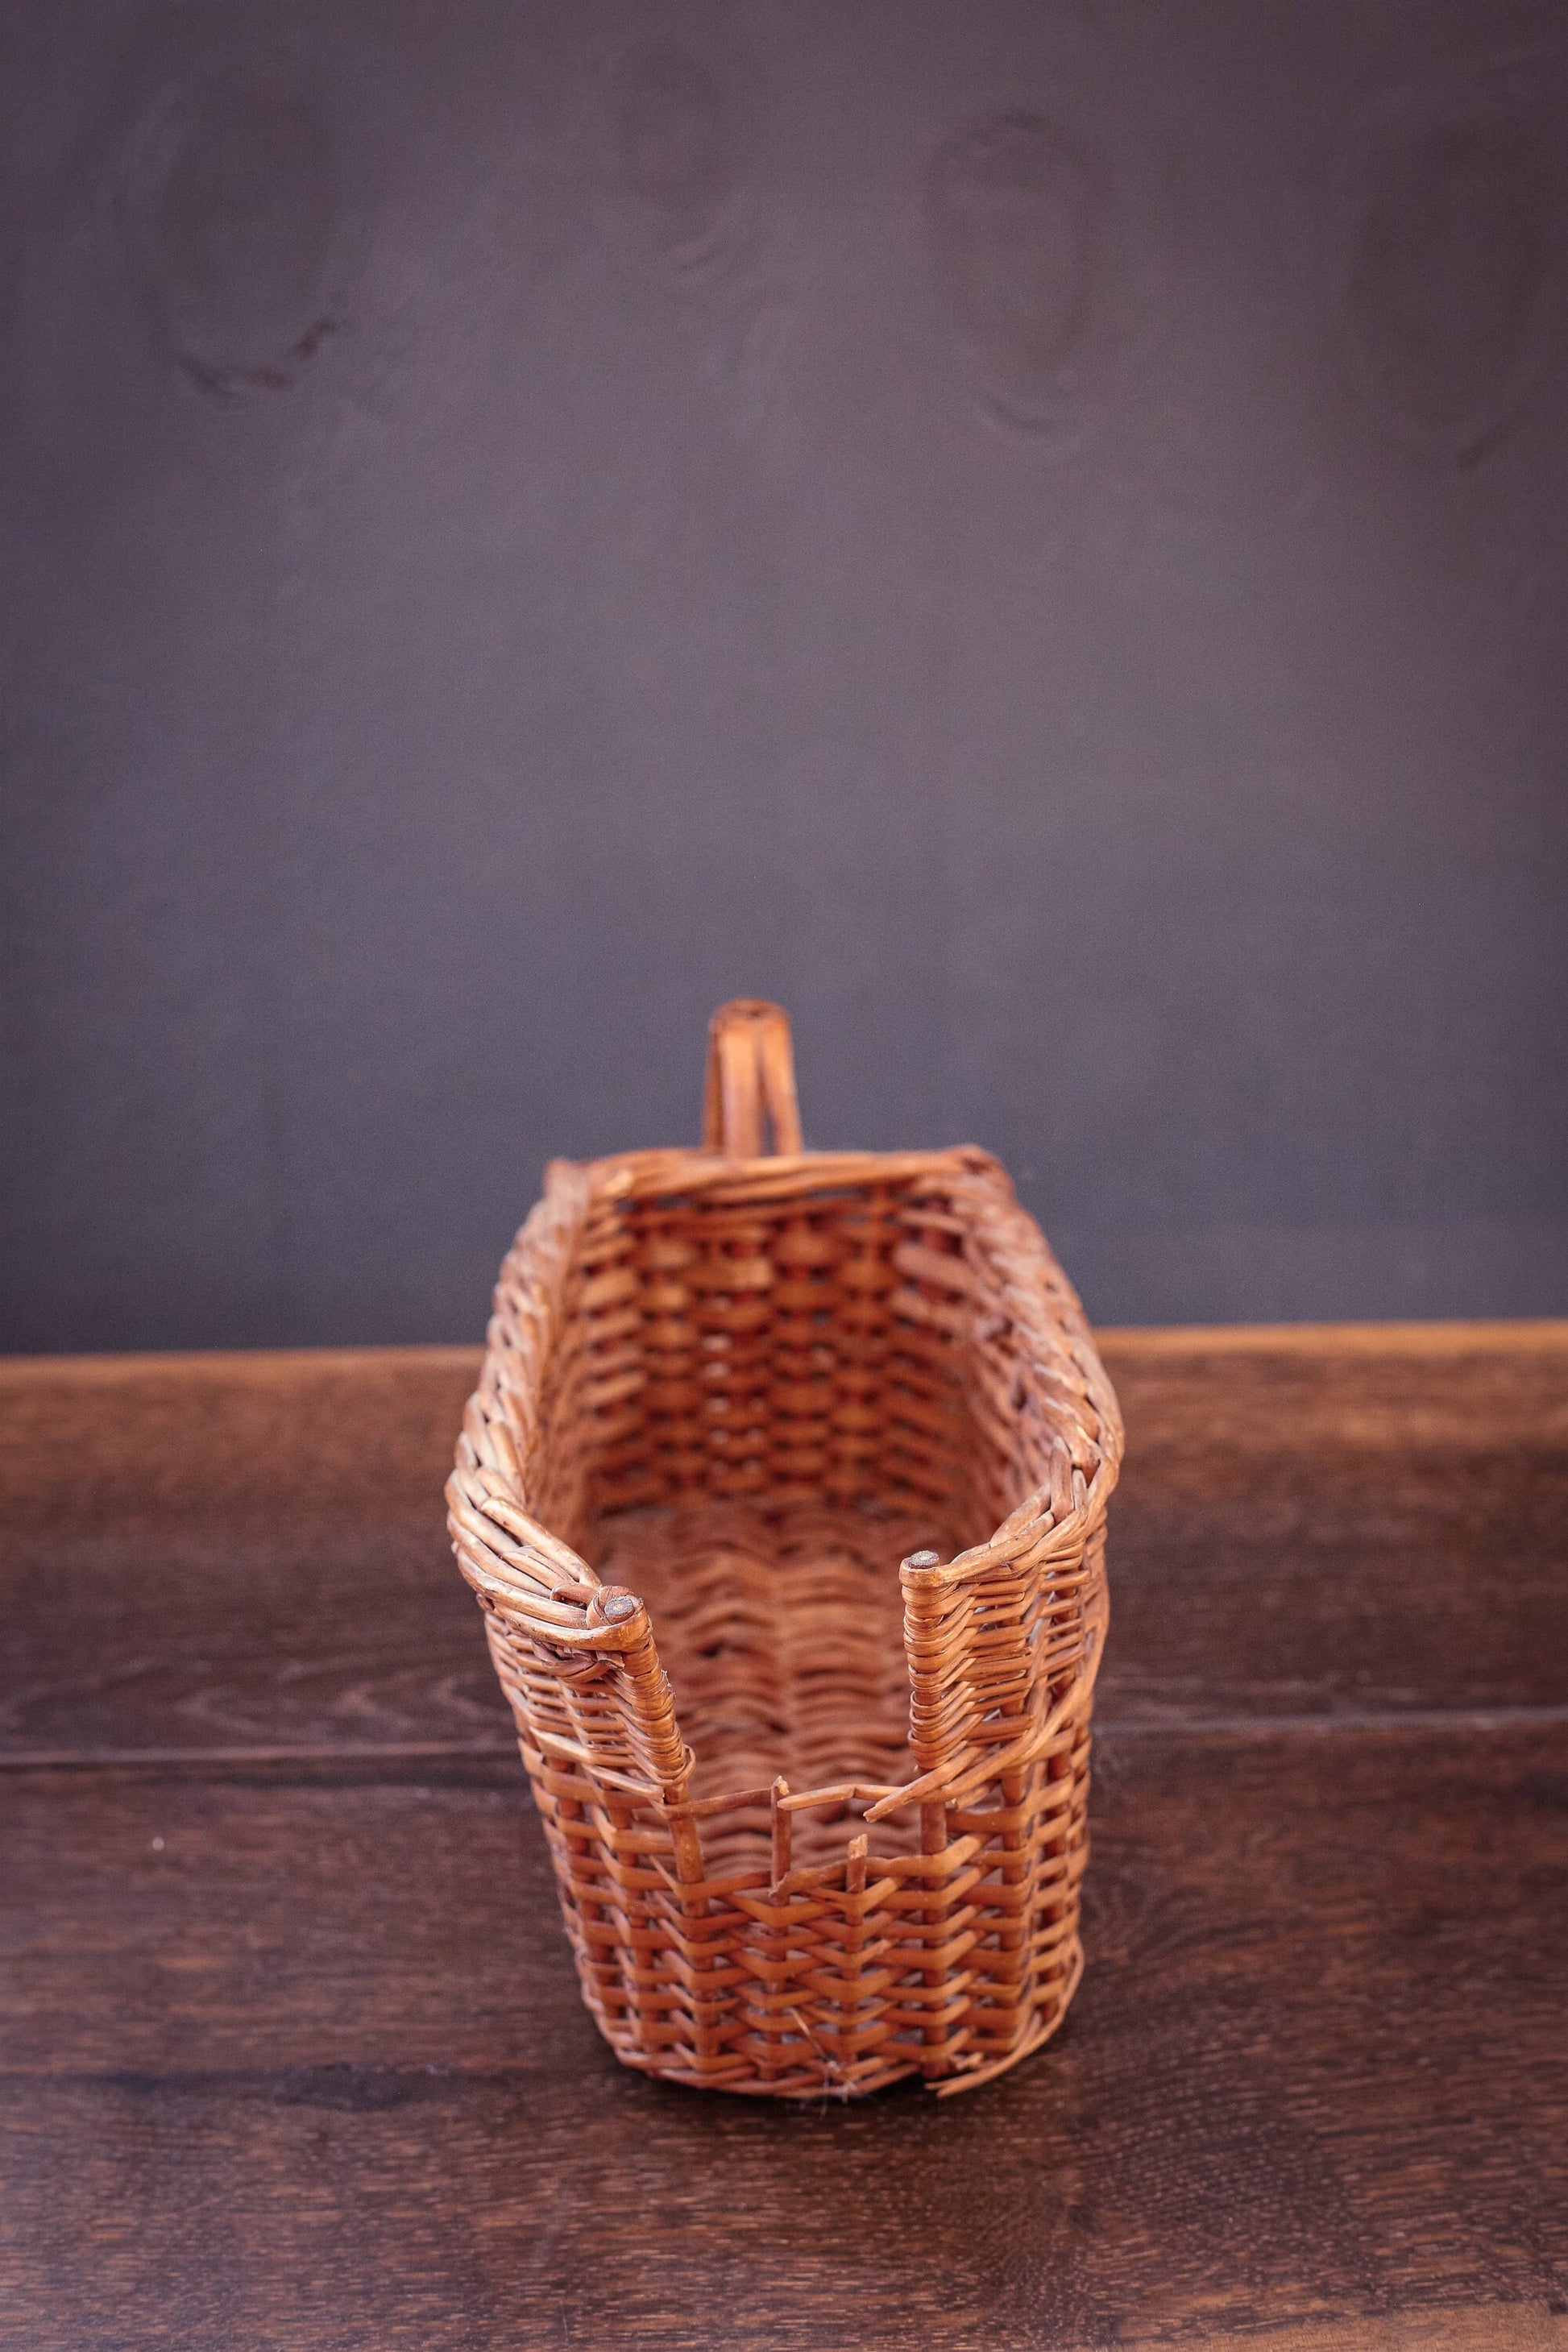 Wicker Wine Basket - Vintage Wicker Basket *as is